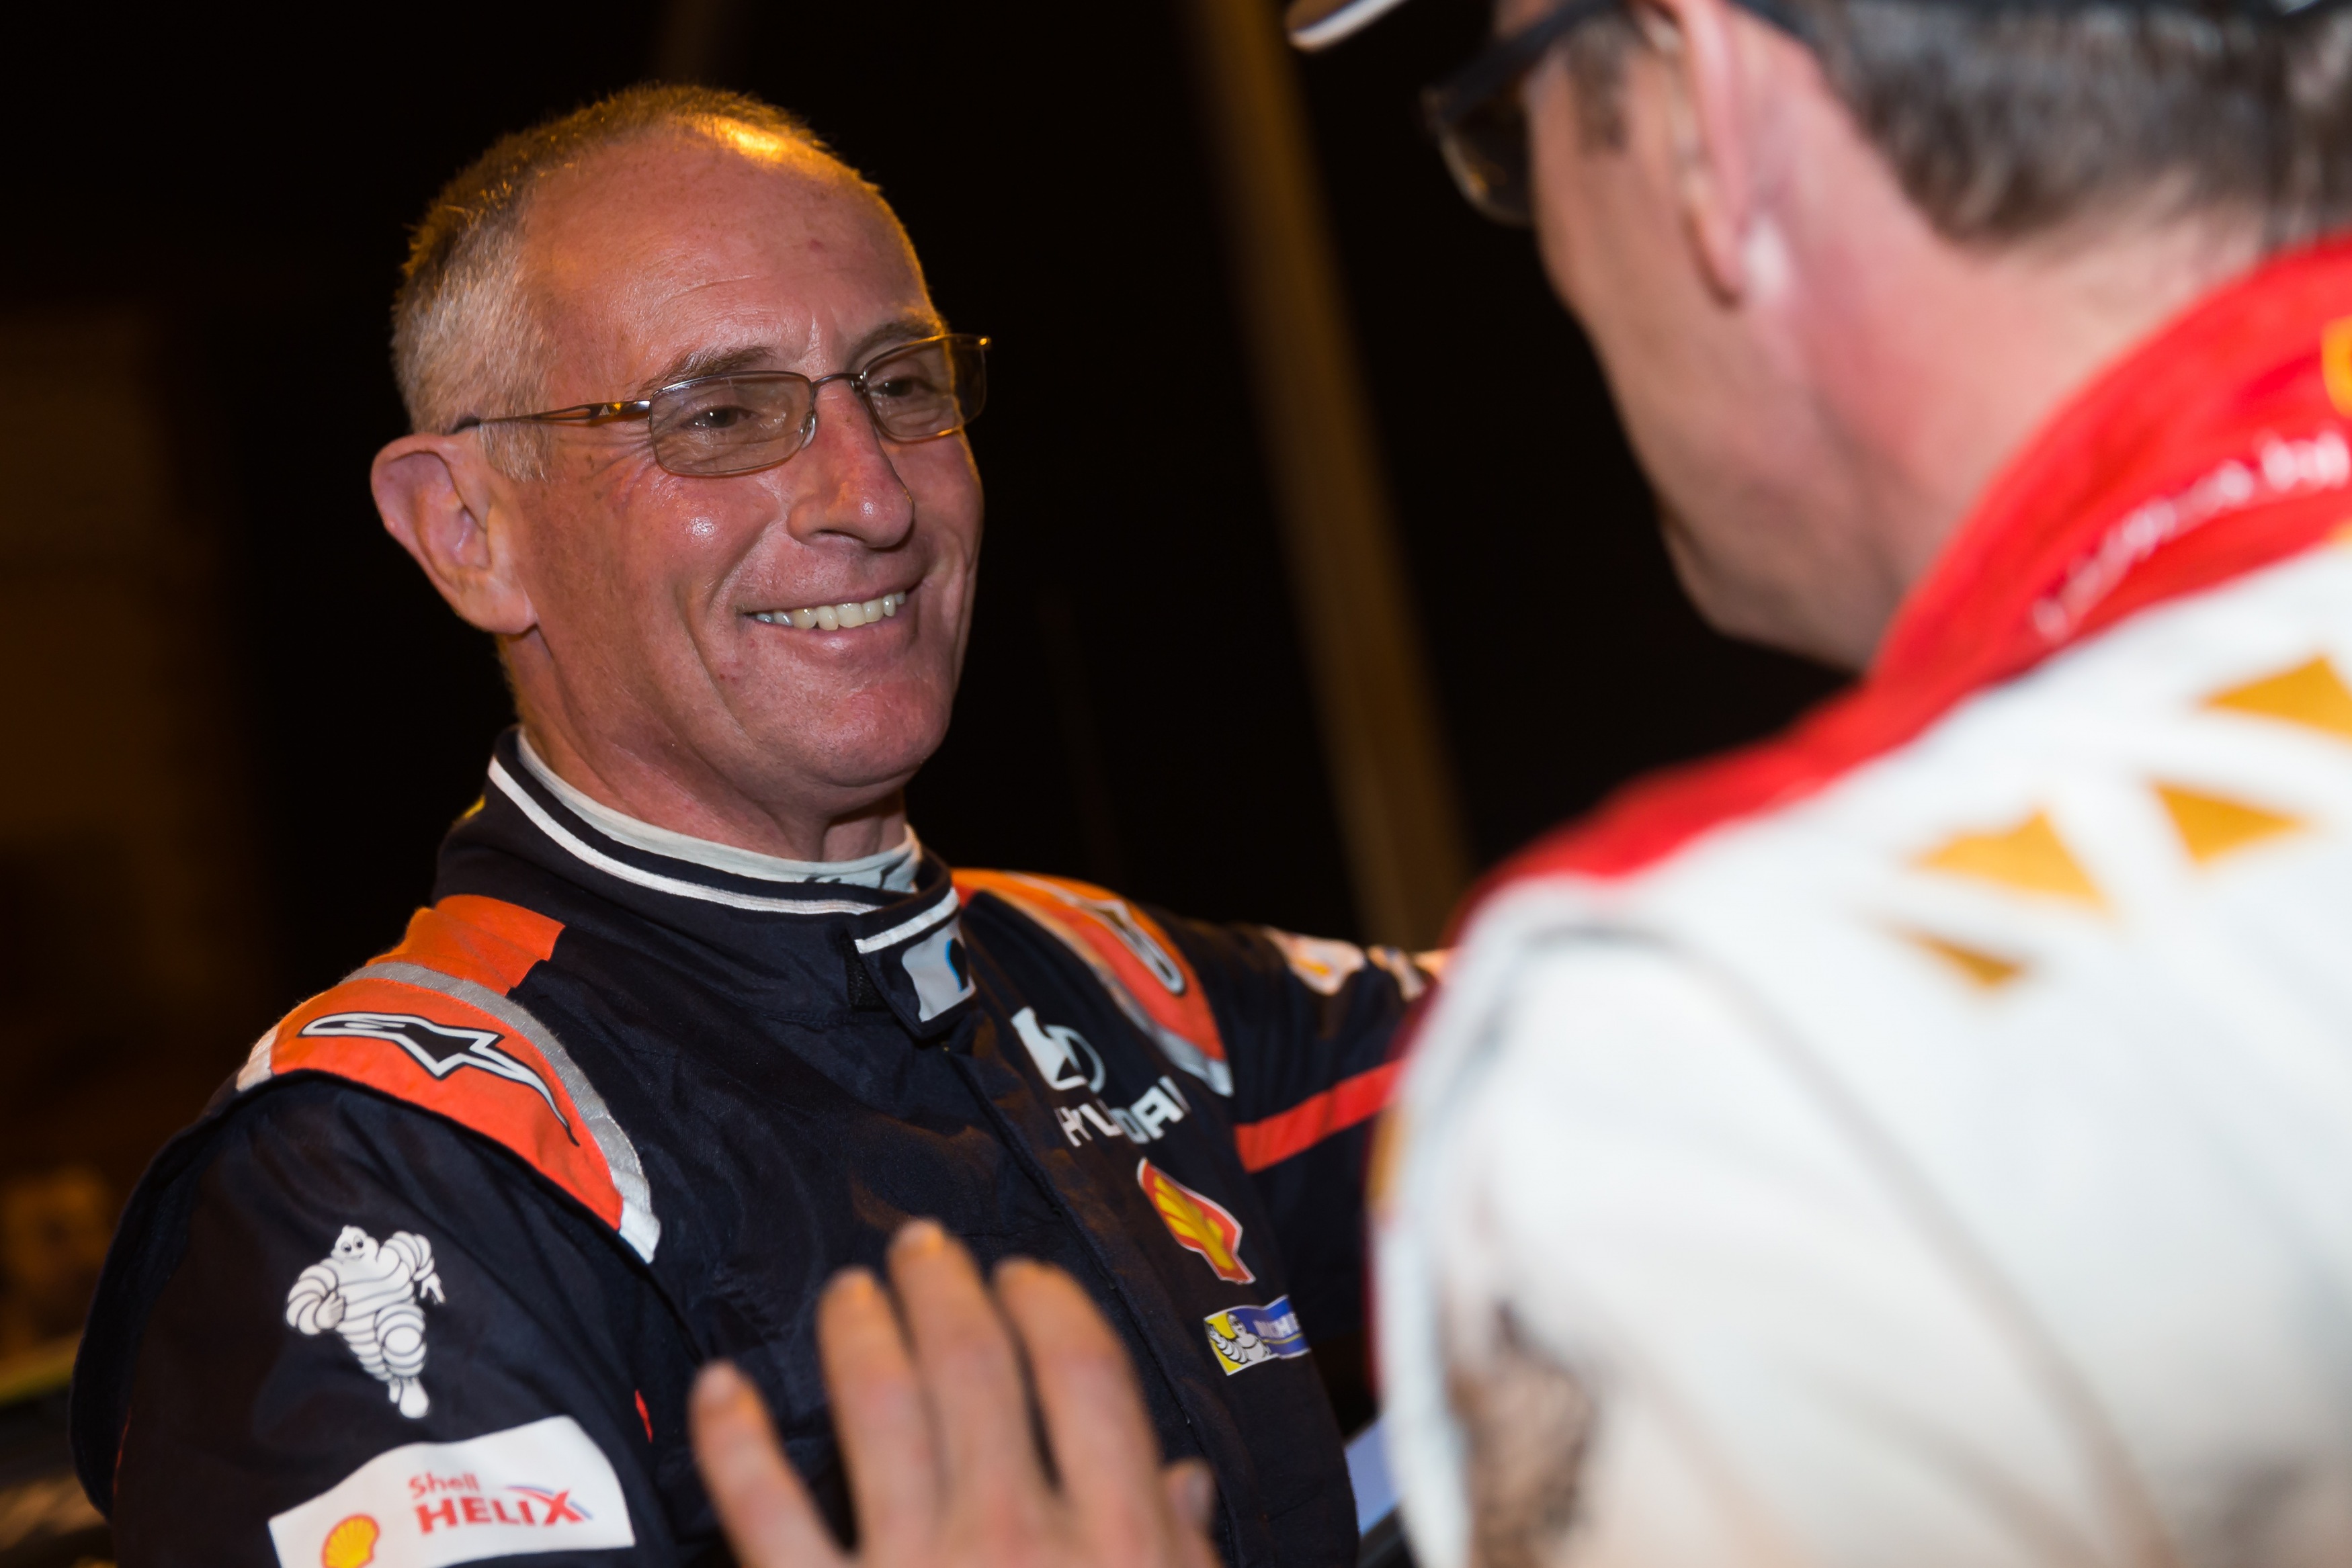 Kennard celebrates WRC achievements in Finland